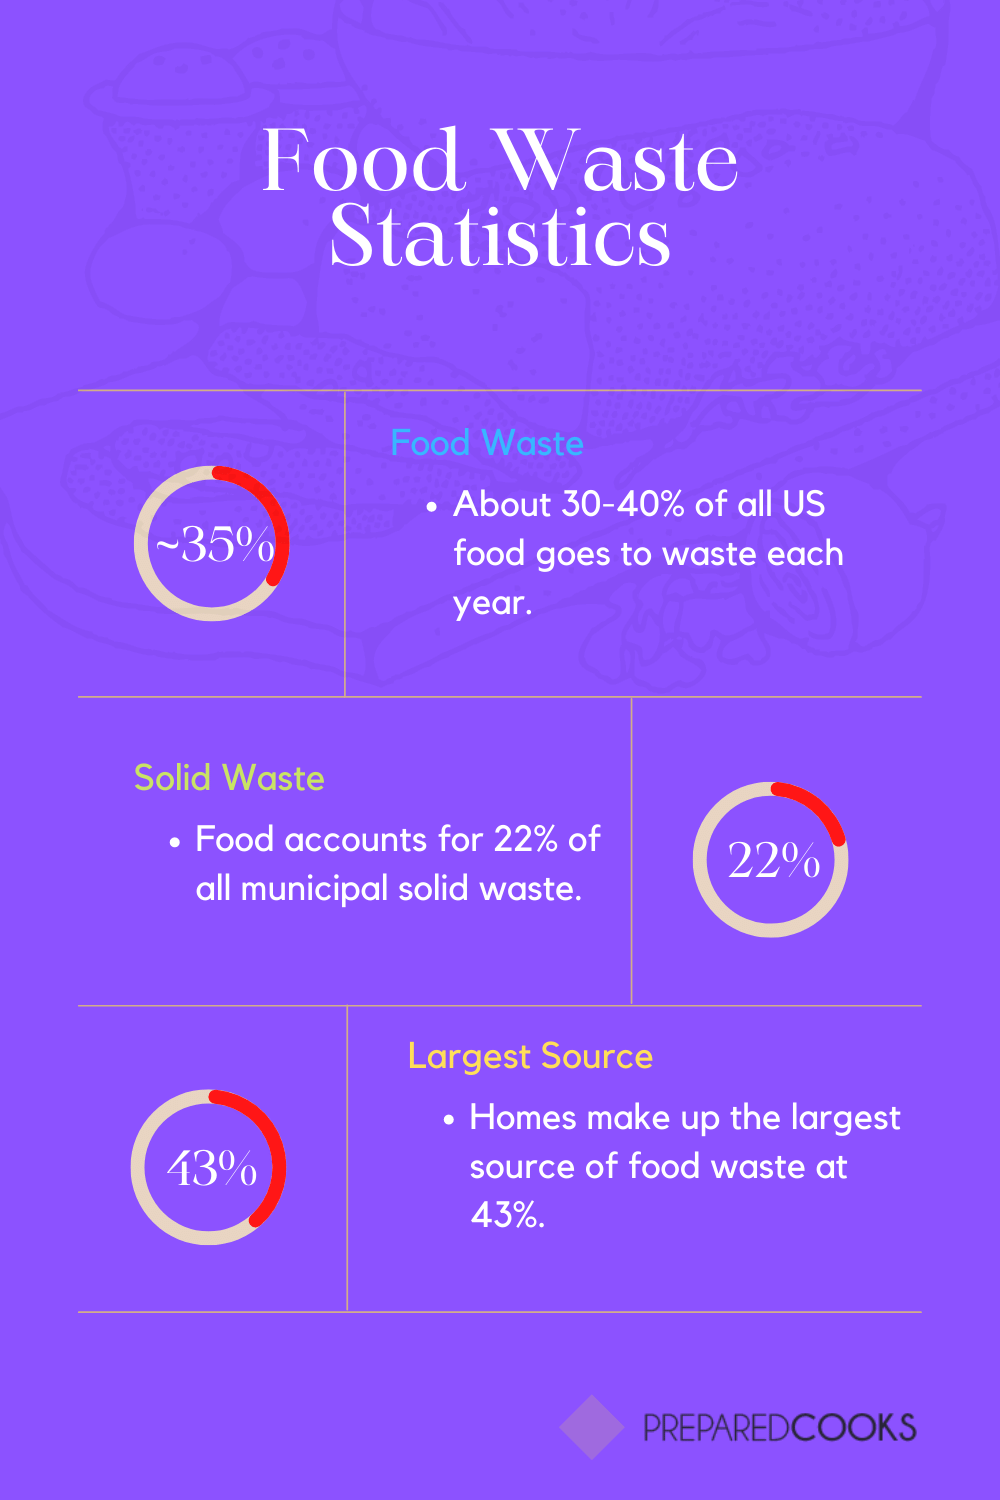 Food waste statistics